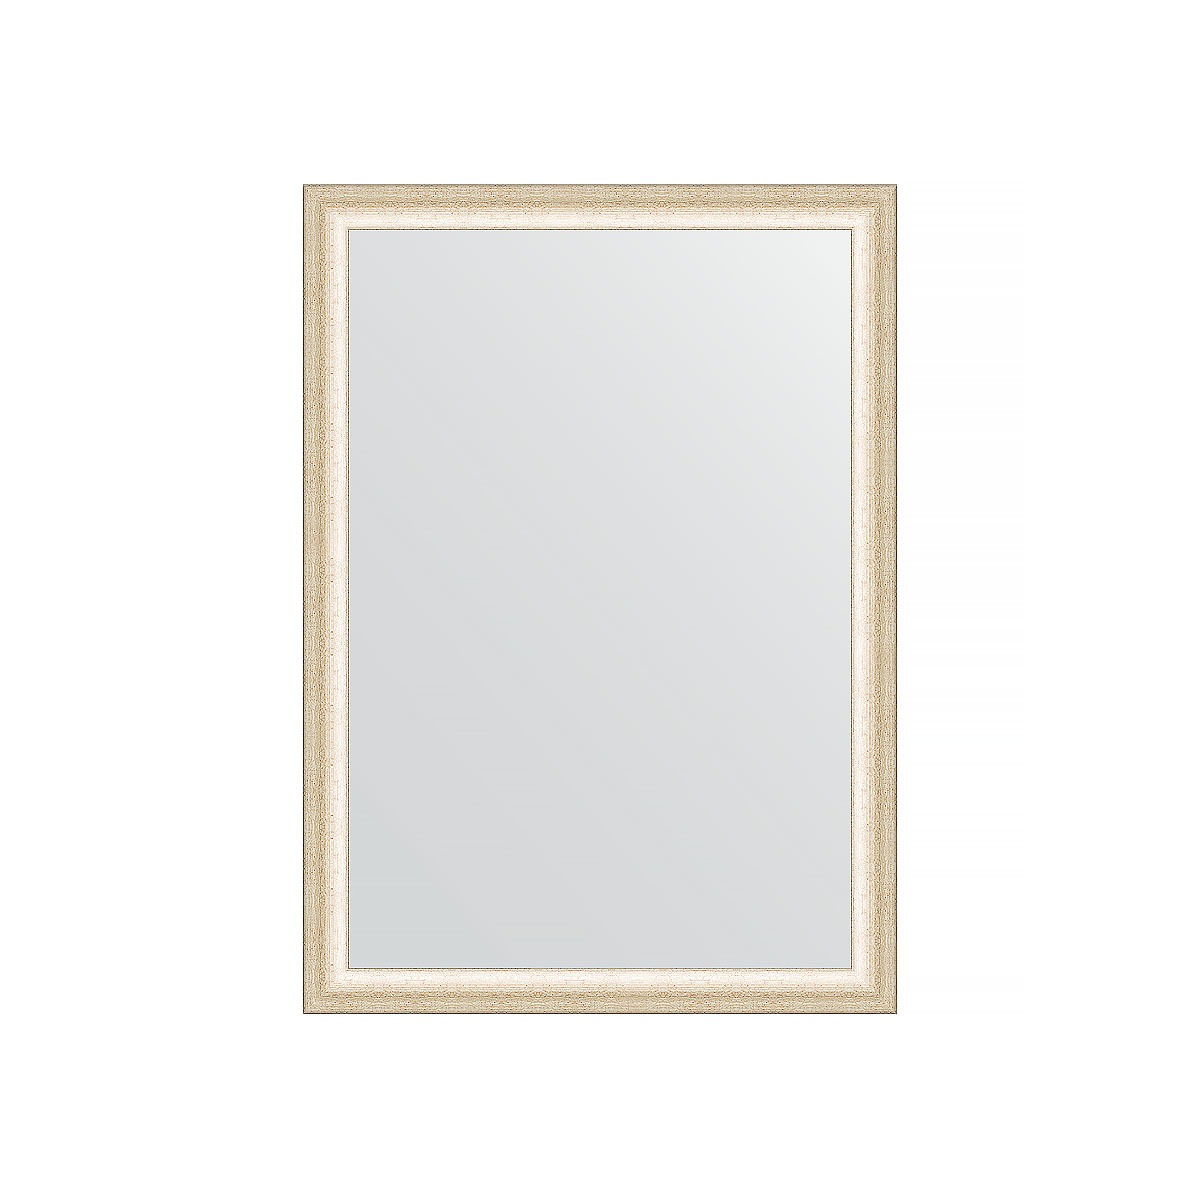 Зеркало в багетной раме Evoform состаренное серебро 37 мм 50х70 см зеркало evoform со шлифованной кромкой 50х70 см